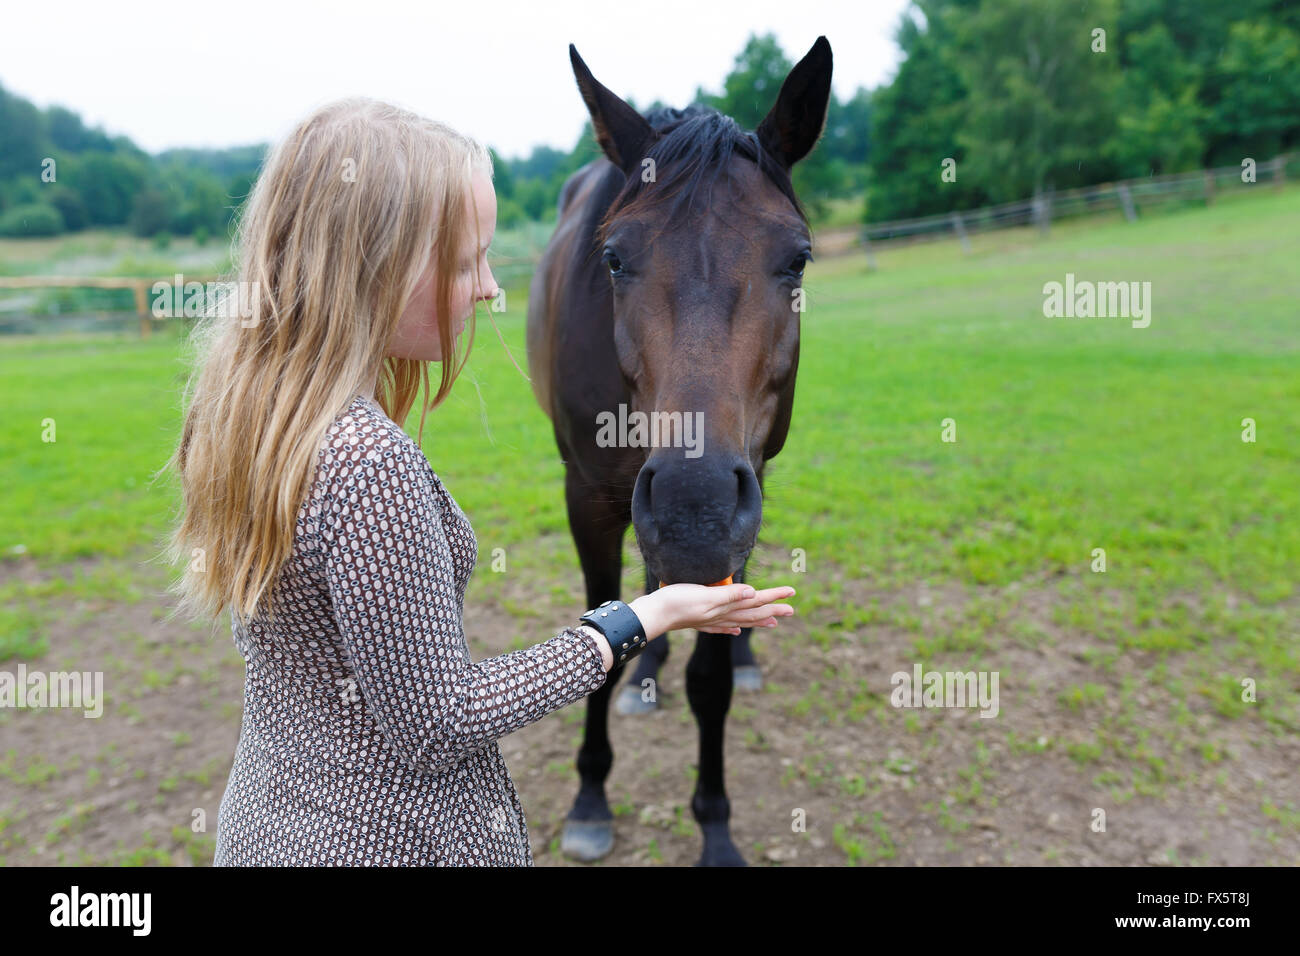 Jeune fille nourrir le cheval une carotte sur le pré Banque D'Images